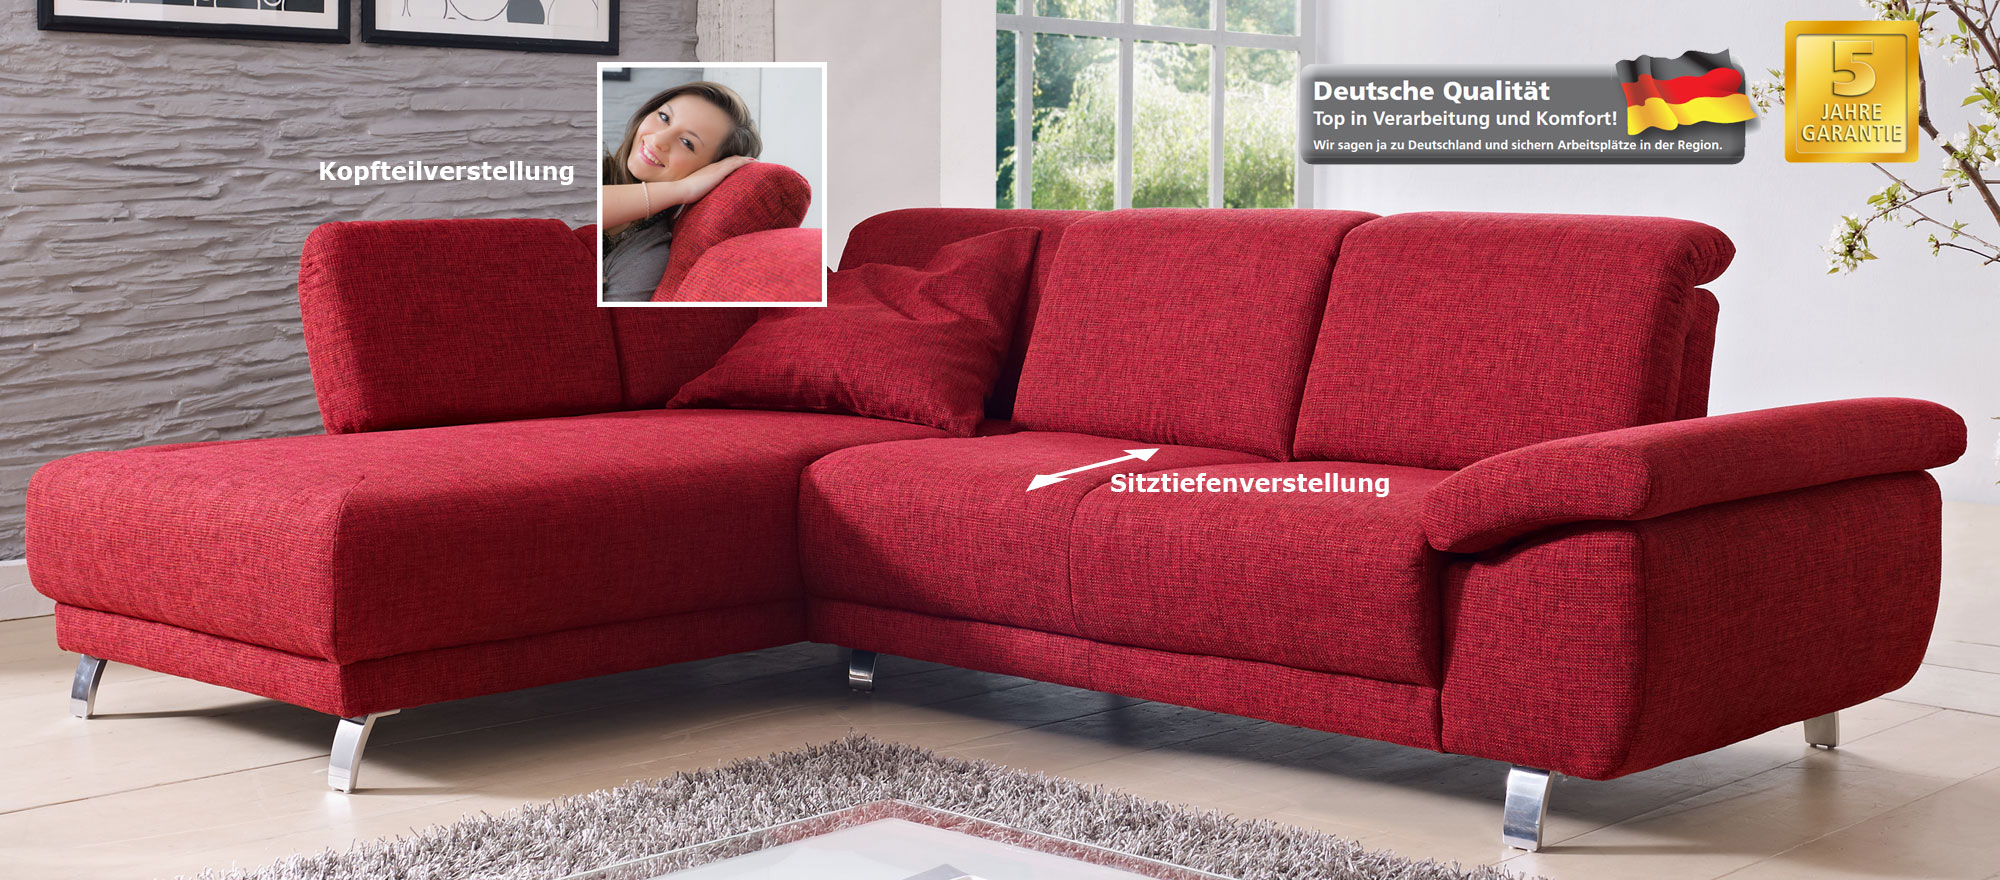 Das Bild zeigt ein Time Sofa mit Recamiere rot.